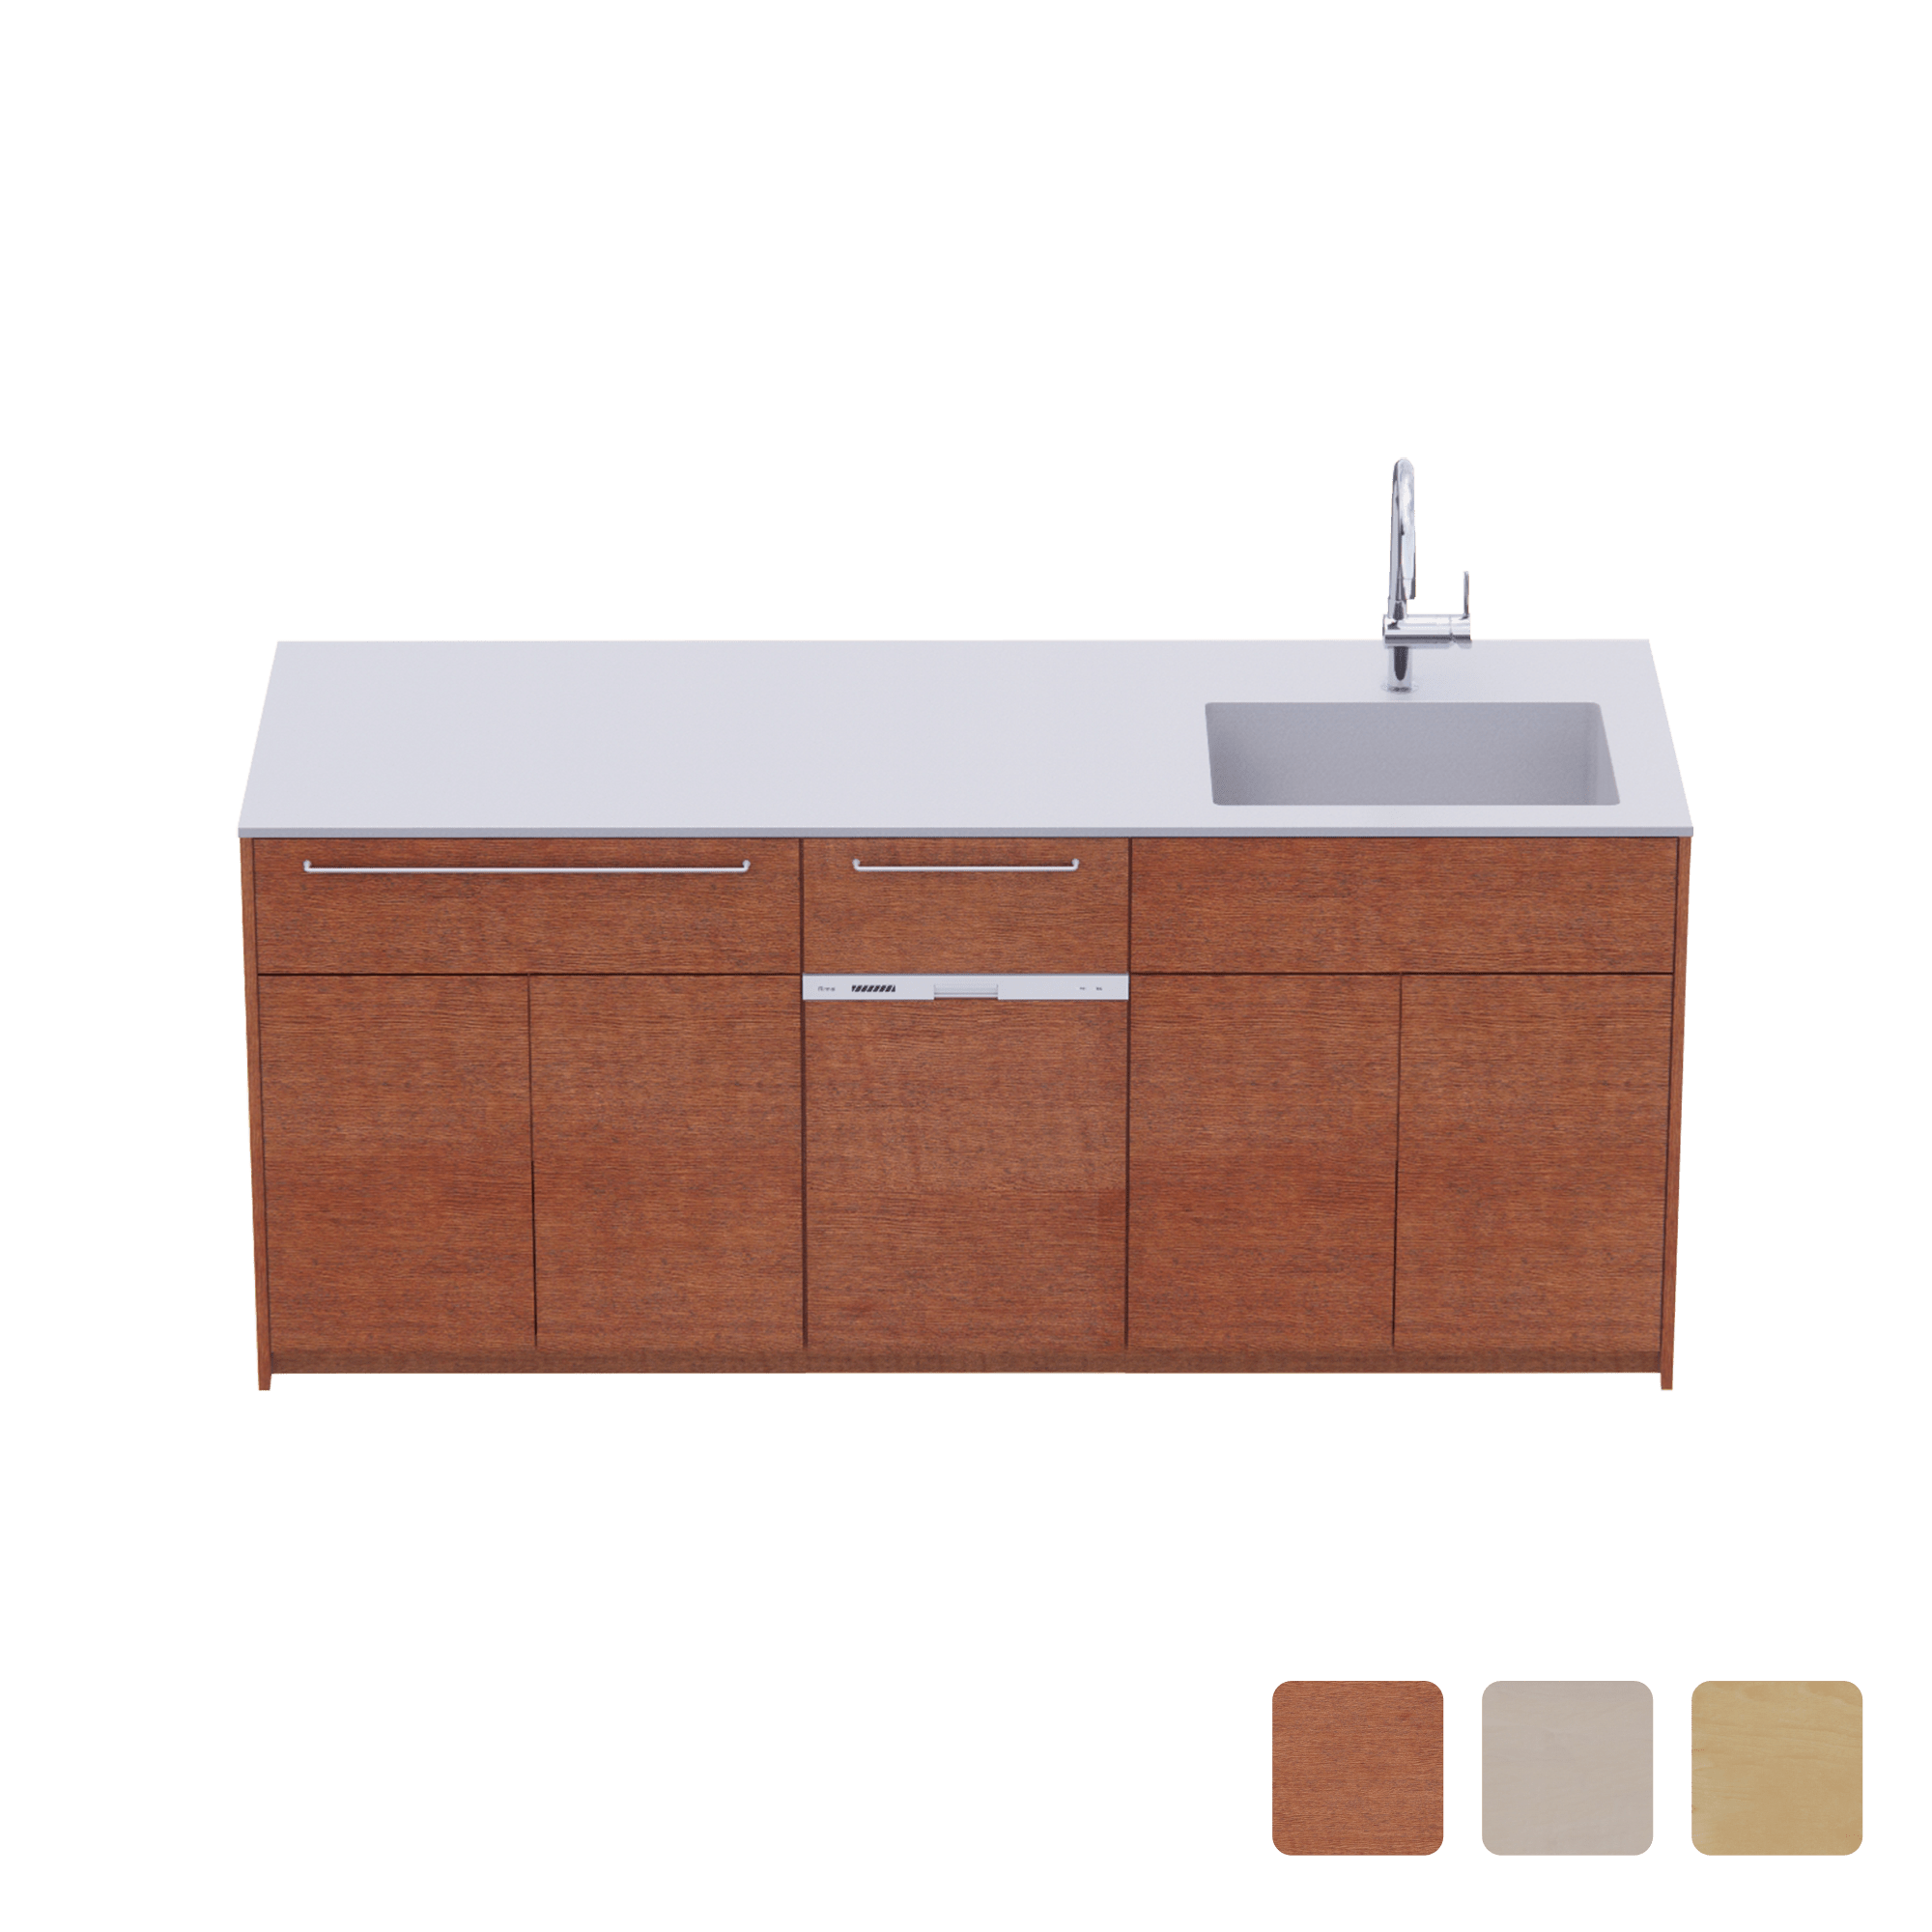 木製システムキッチン 対面型 W1990・コンロなし / オーブンなし / 食洗機あり